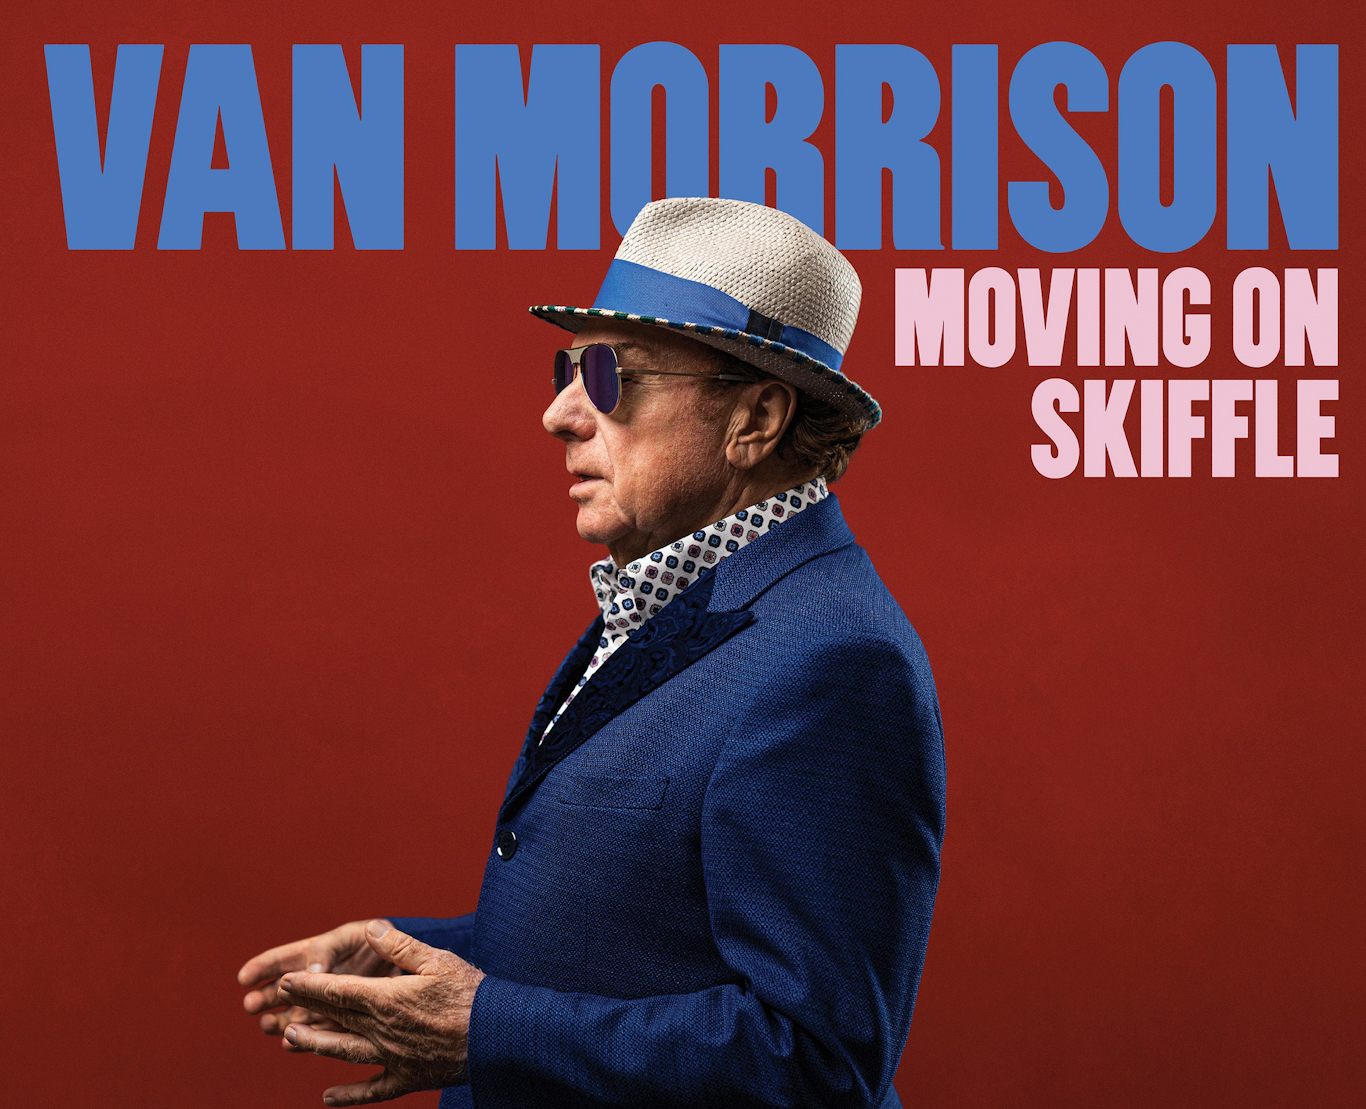 Van Morrison – Moving On Skiffle